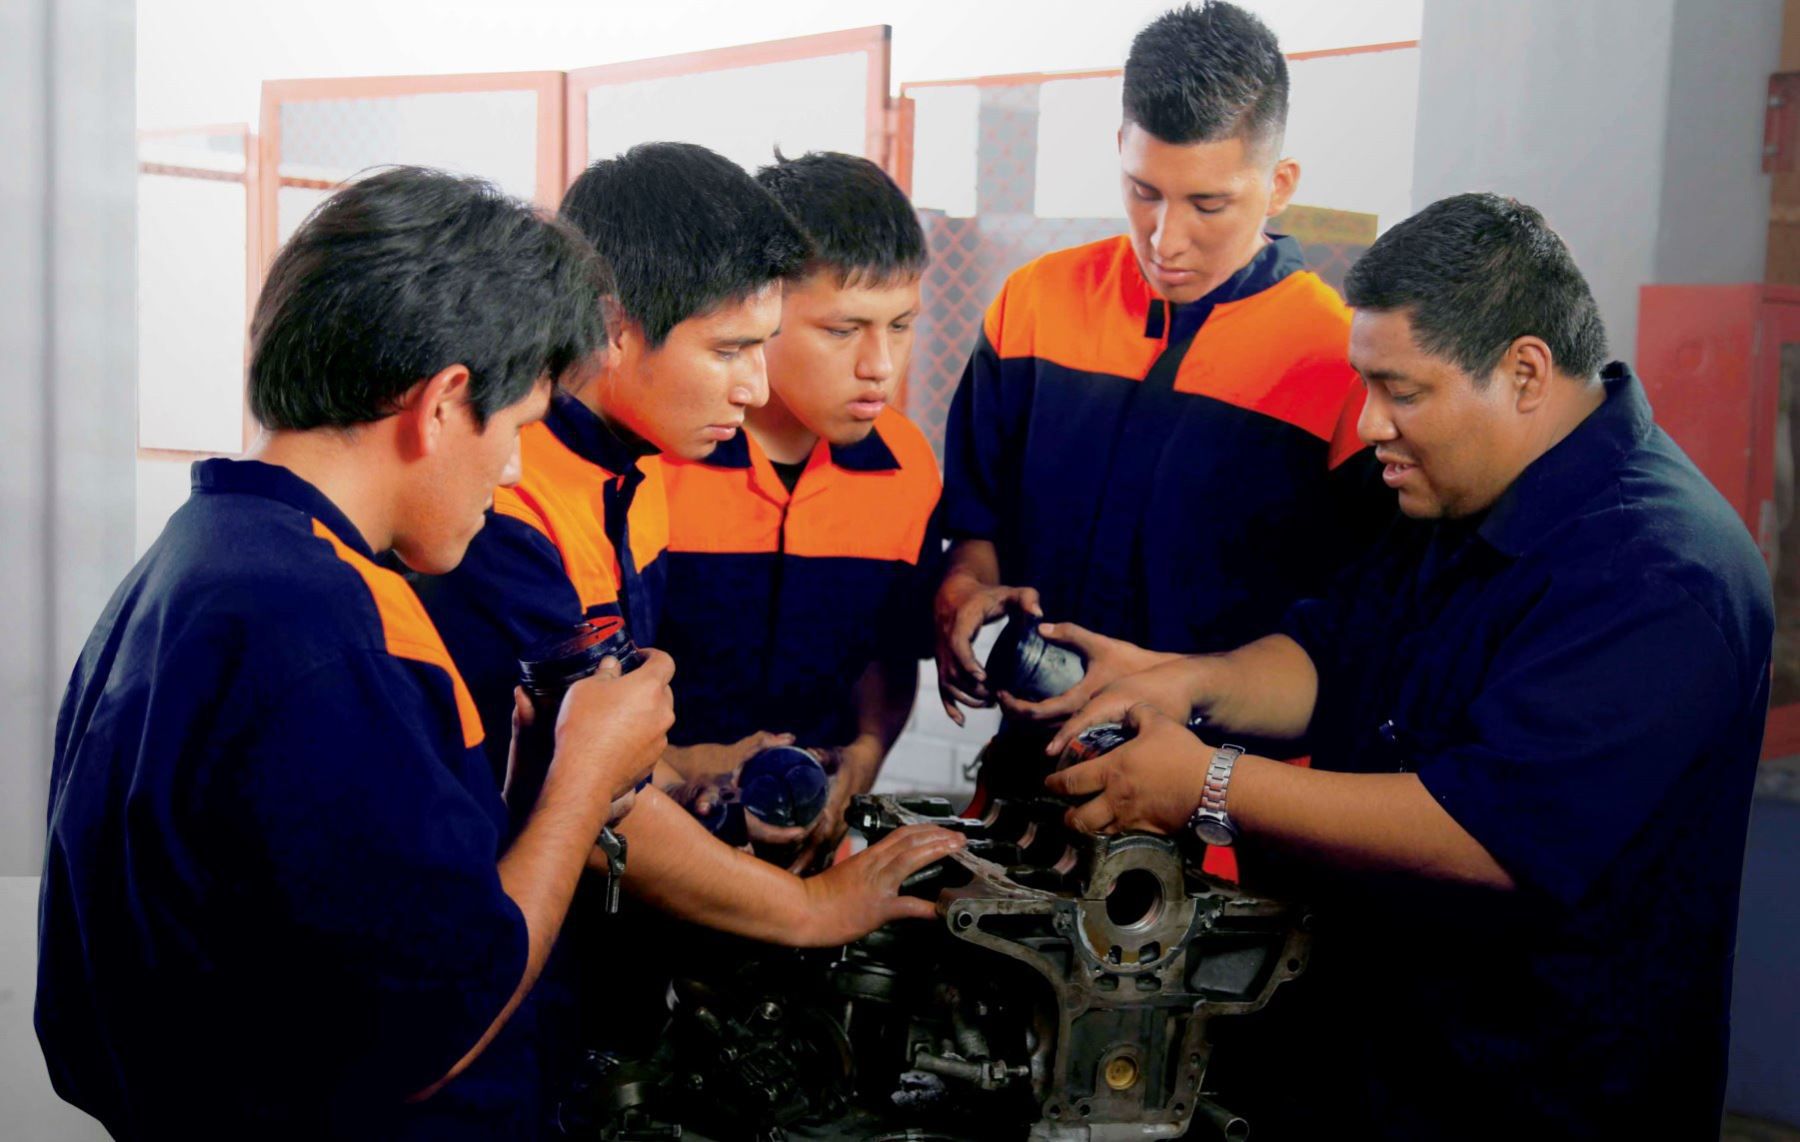 La tercera convocatoria de "Mi Oportunidad Técnica" está en marcha, con inscripciones abiertas para estudiantes interesados en mejorar sus habilidades técnicas y encontrar empleo digno en el mercado laboral actual. (Andina)